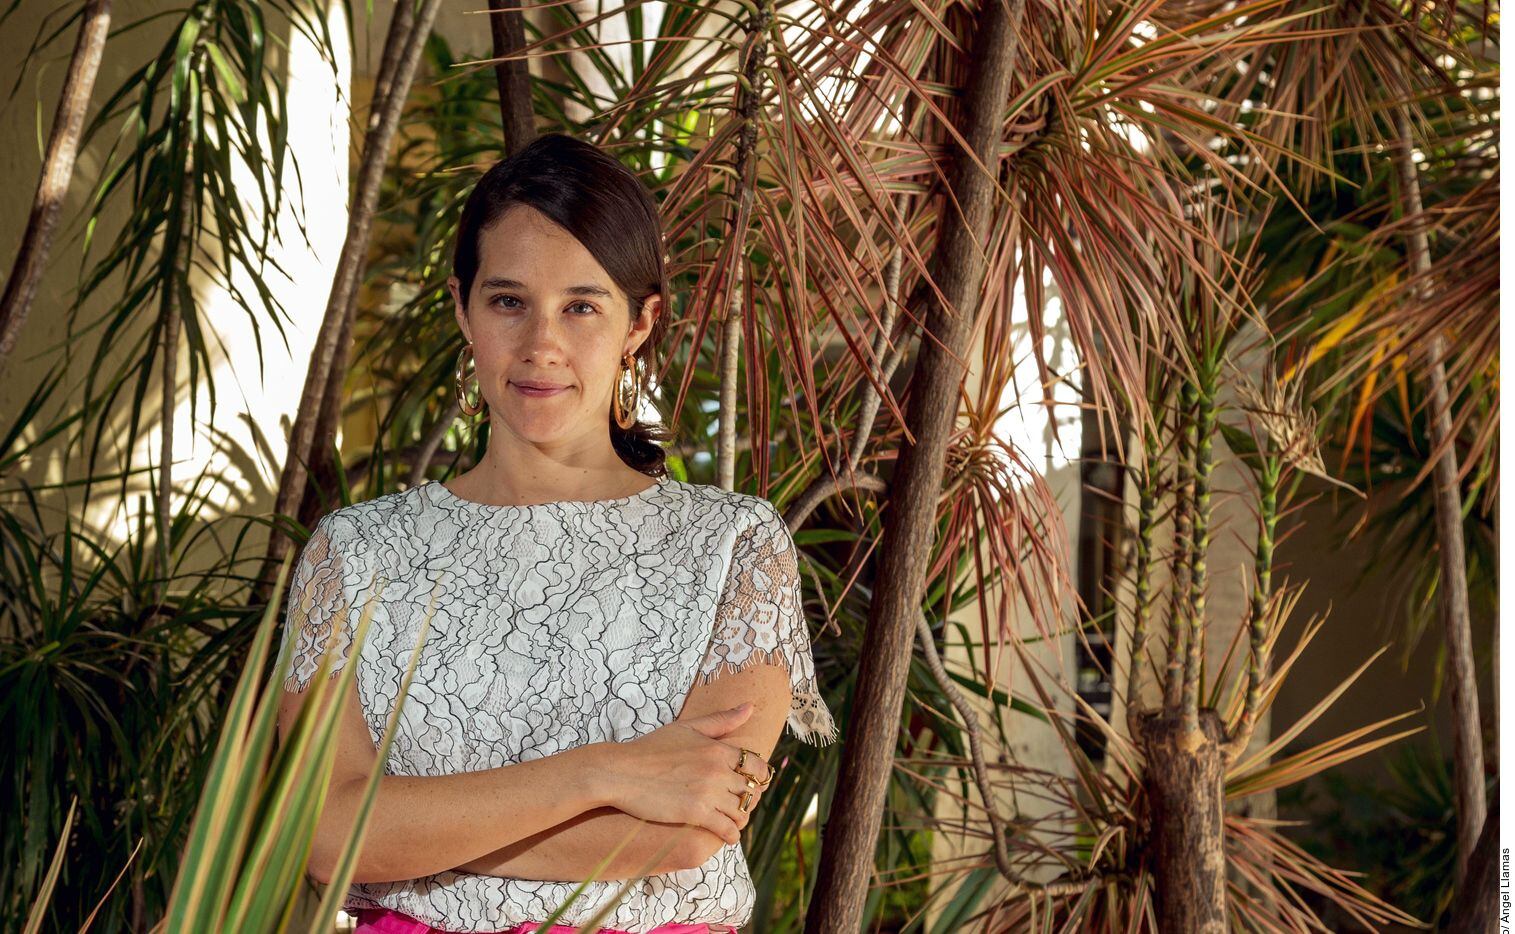 La intérprete de “Mediocre”, Ximena Sariñana, combinó su labor musical con la actuación, al protagonizar la serie ;Un Día Eres Joven’ y, durante el verano, grabar una producción de Netflix de la que no dio mayores detalles.